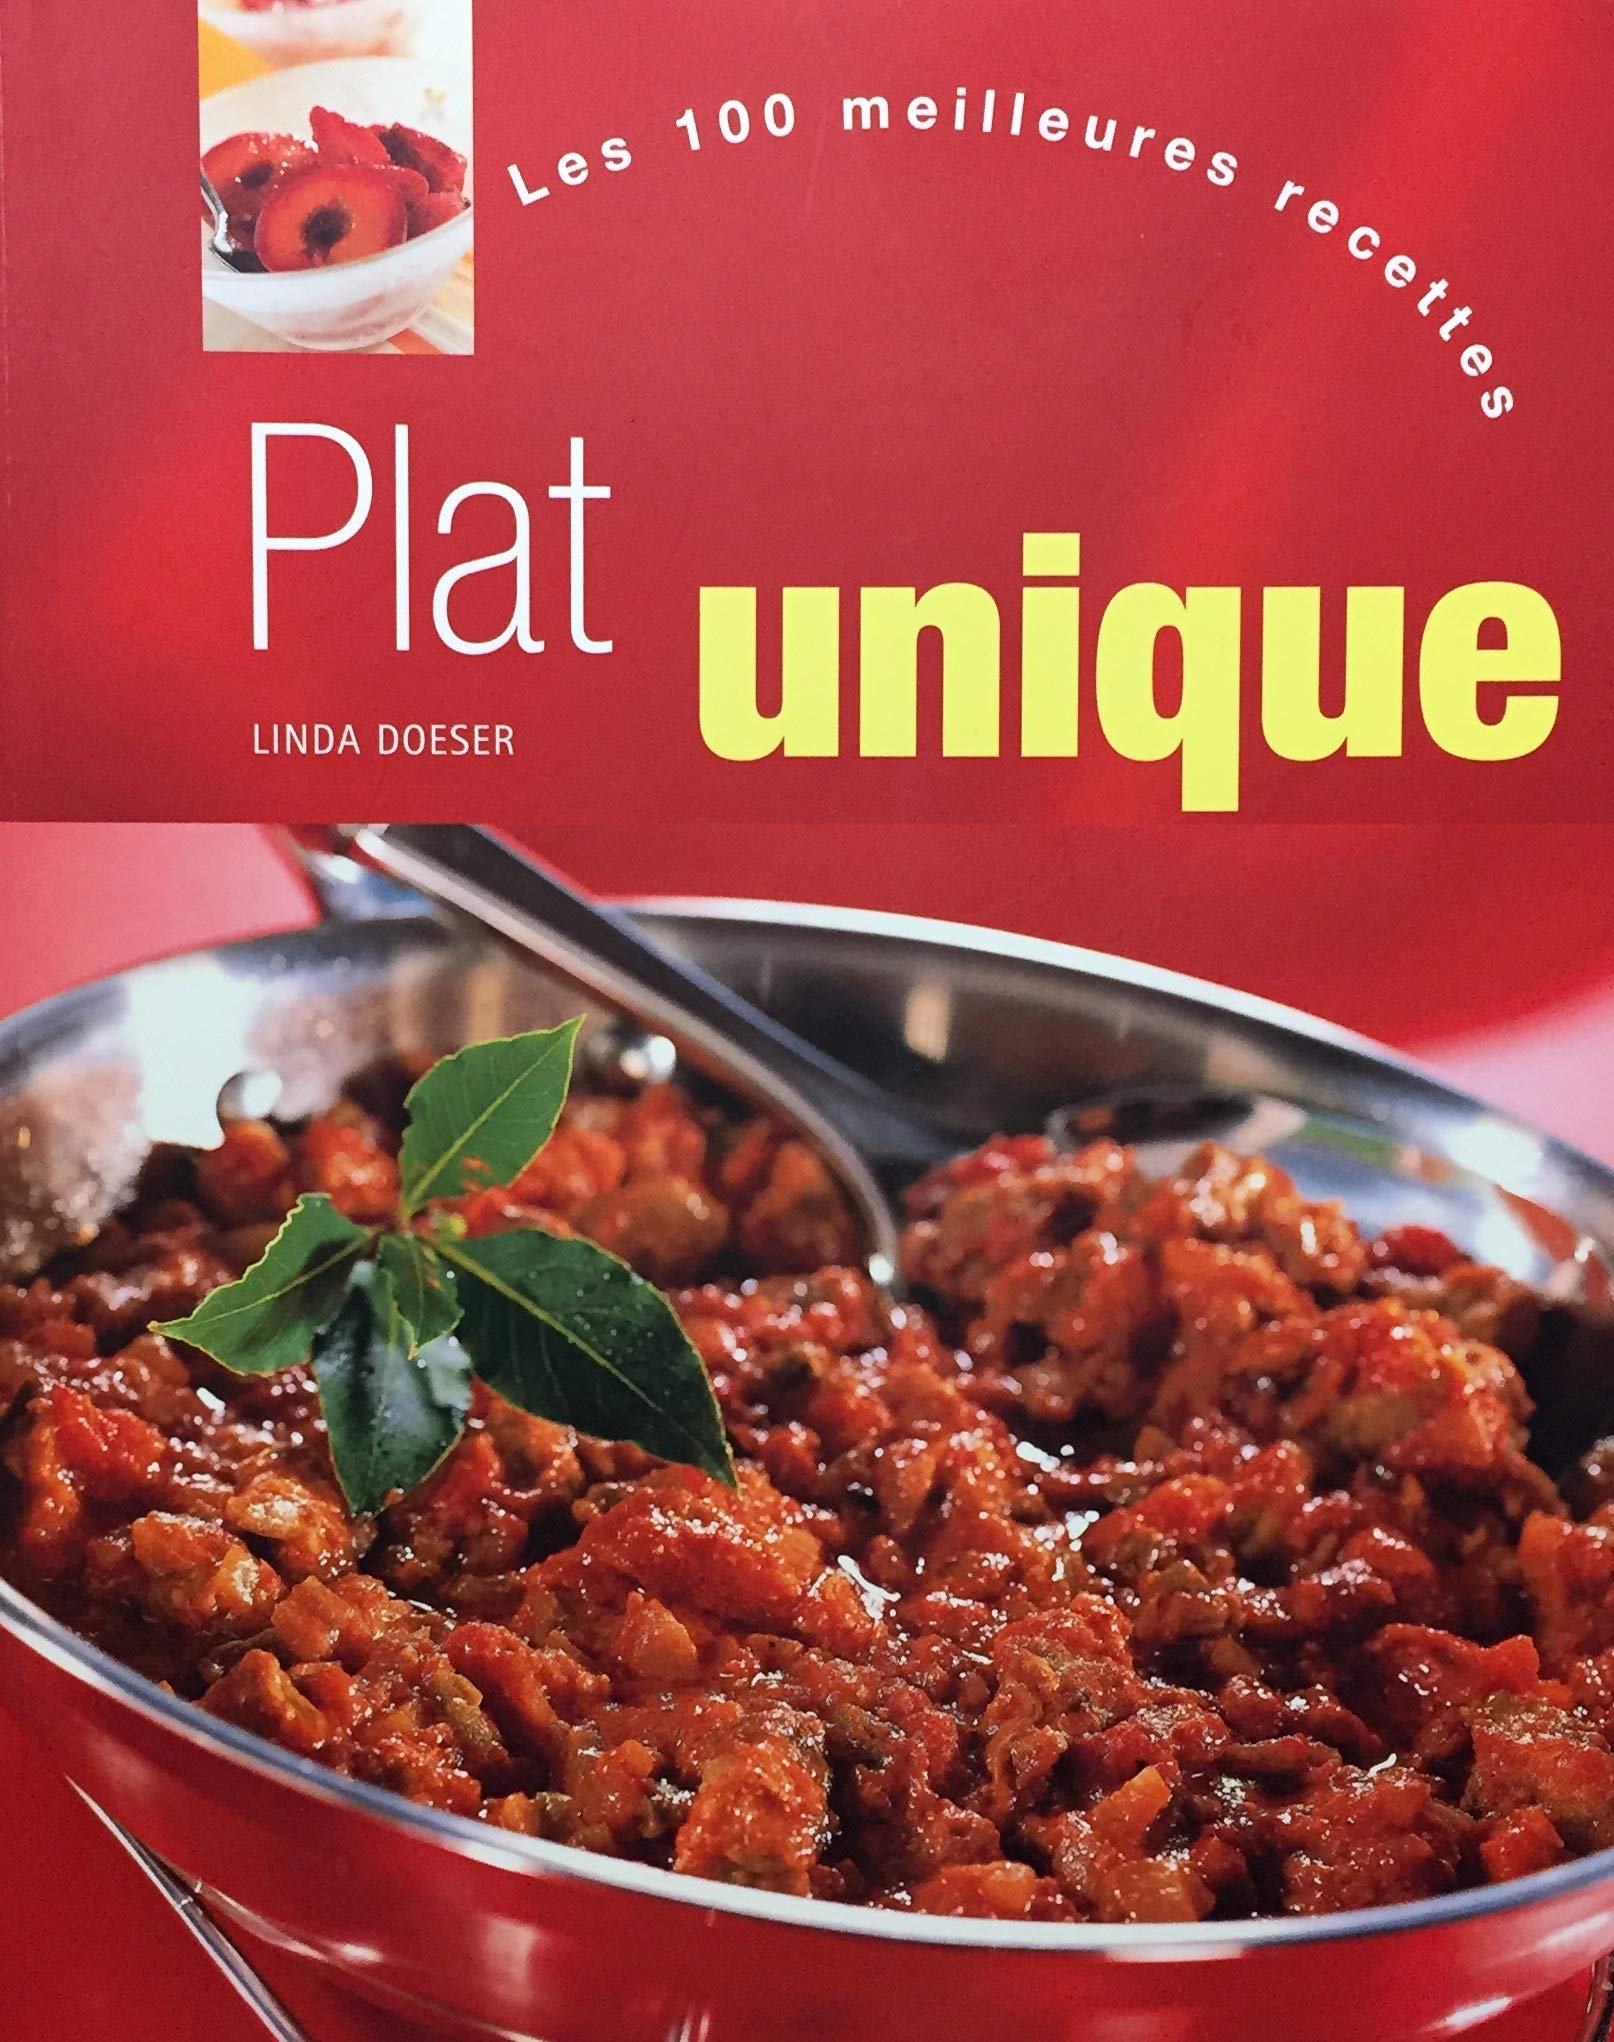 Livre ISBN 1405435658 Les 100 meilleures recettes : Plat unique (Linda Doeser)